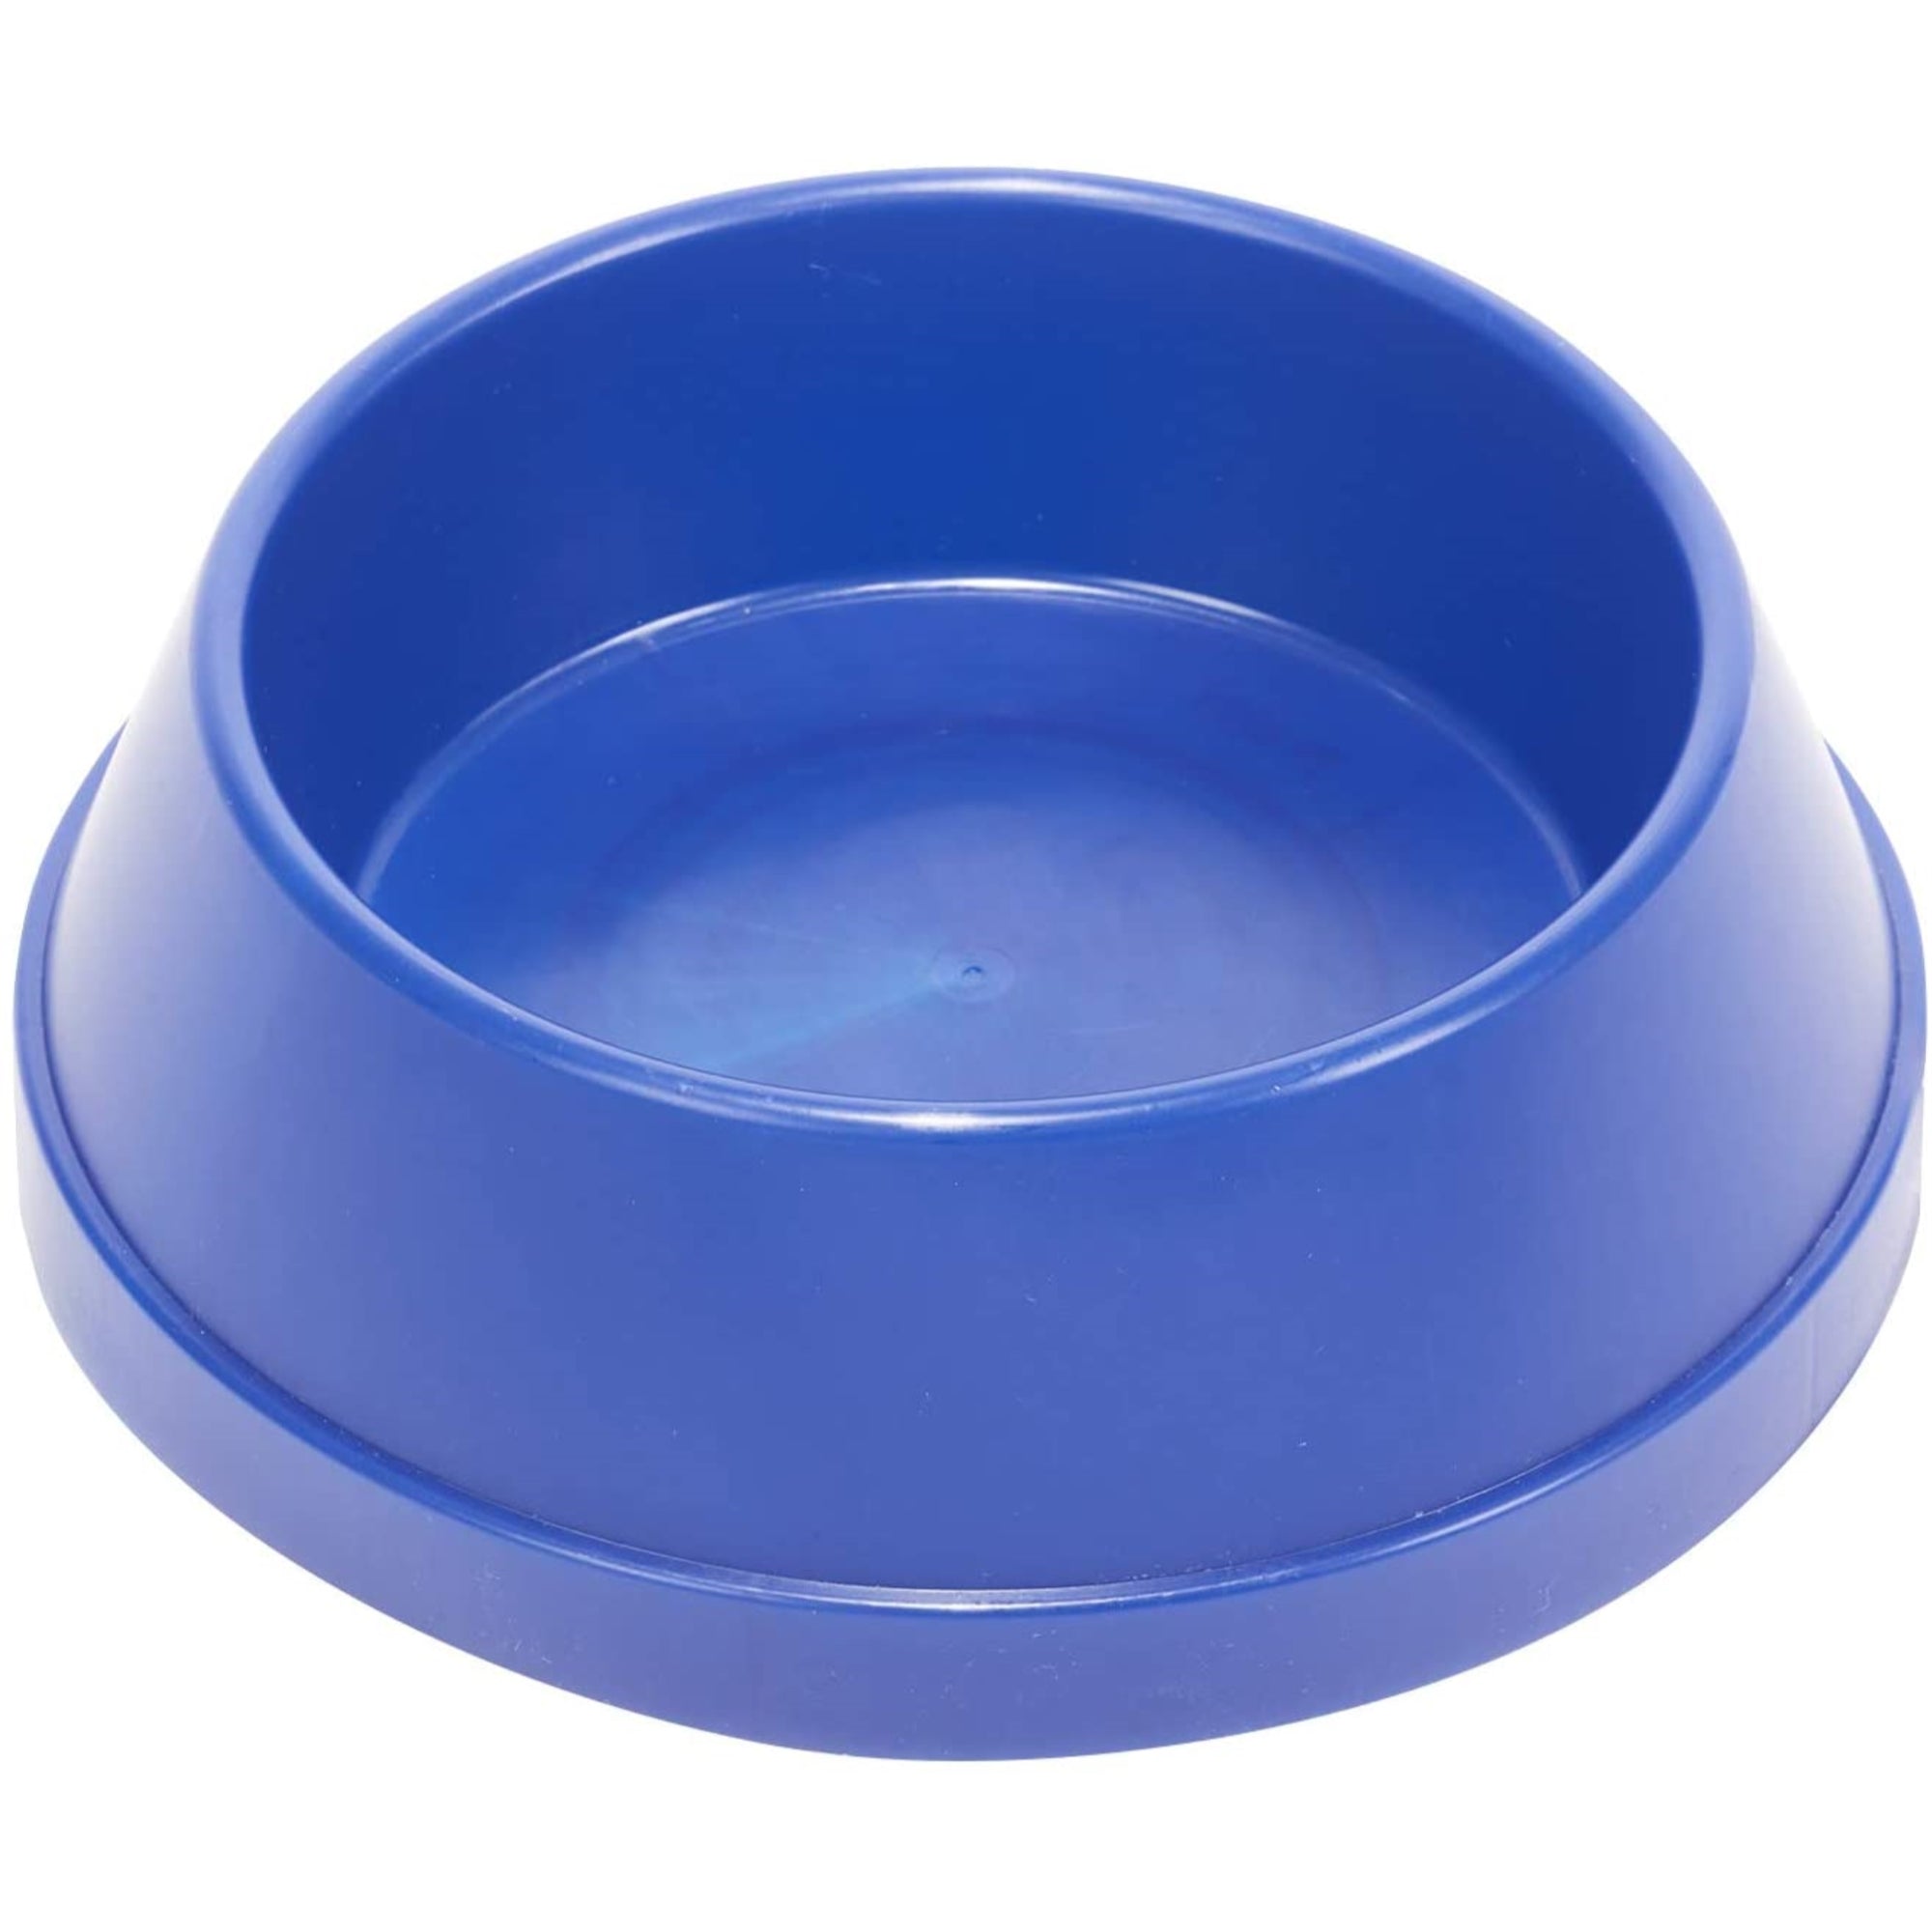 API  Heated Plastic Pet Bowl, Blue, 5 Quart